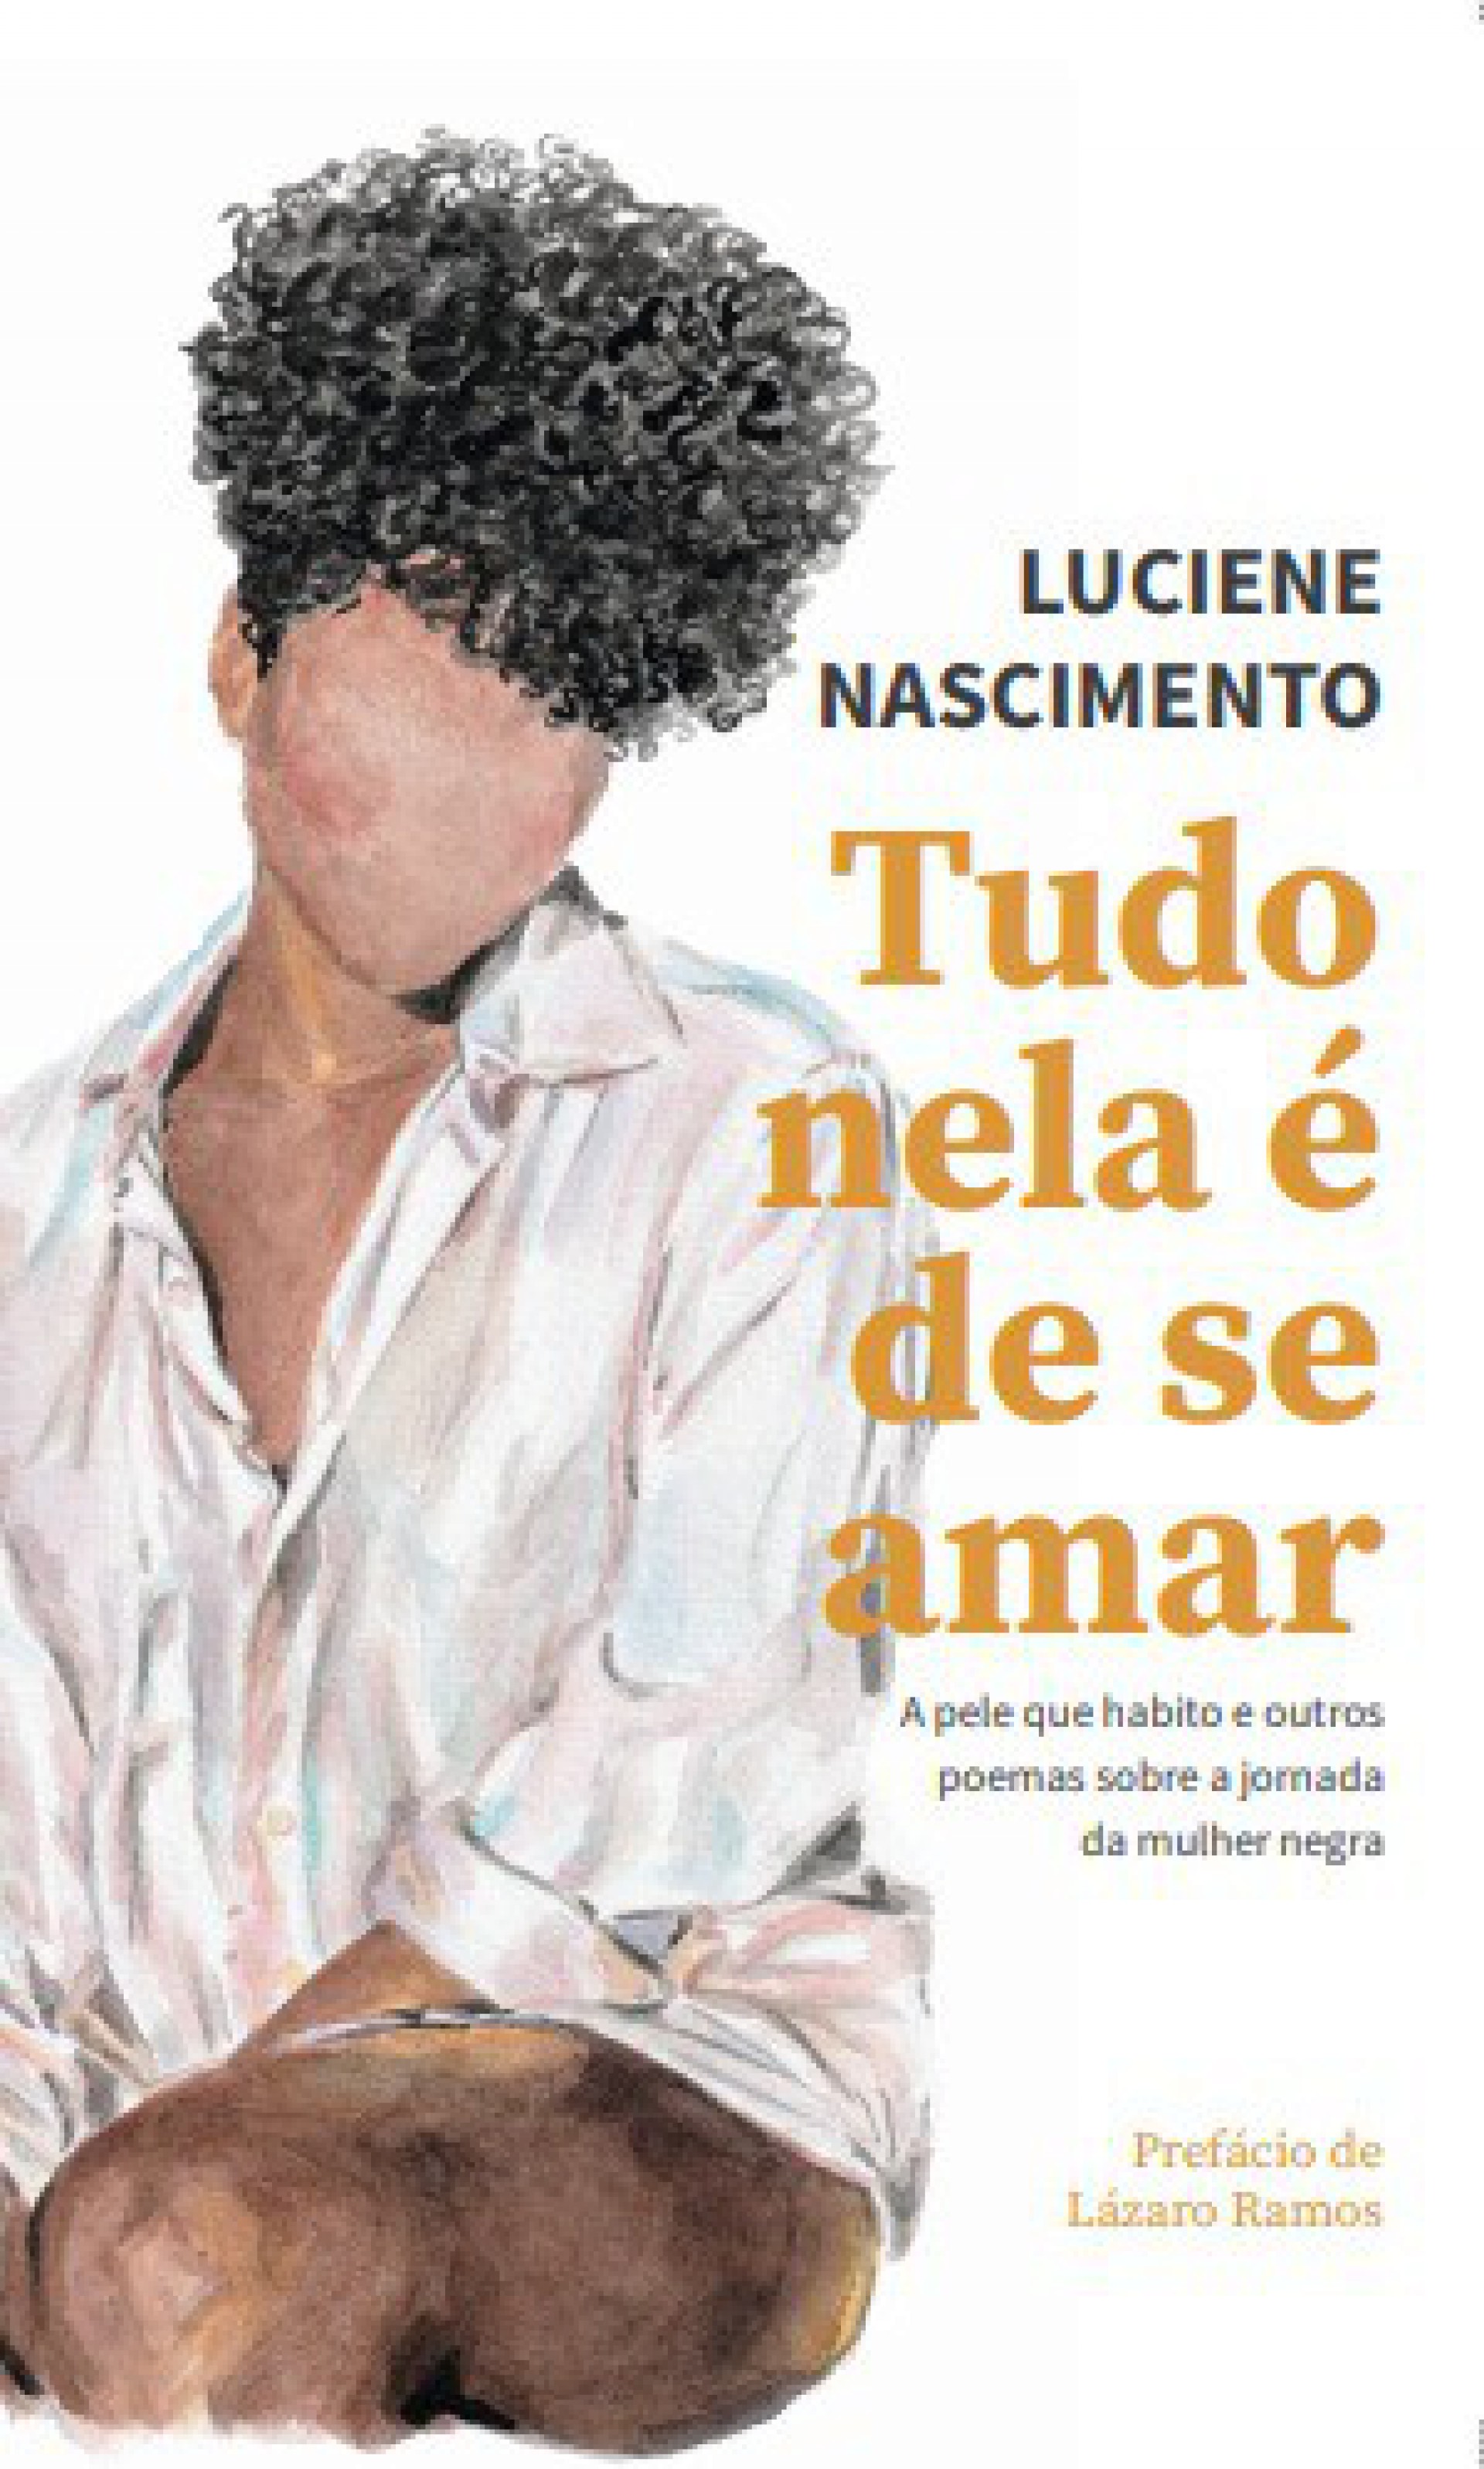 Capa do livro com ilustração da artista Mariana Sguilla - Divulgação